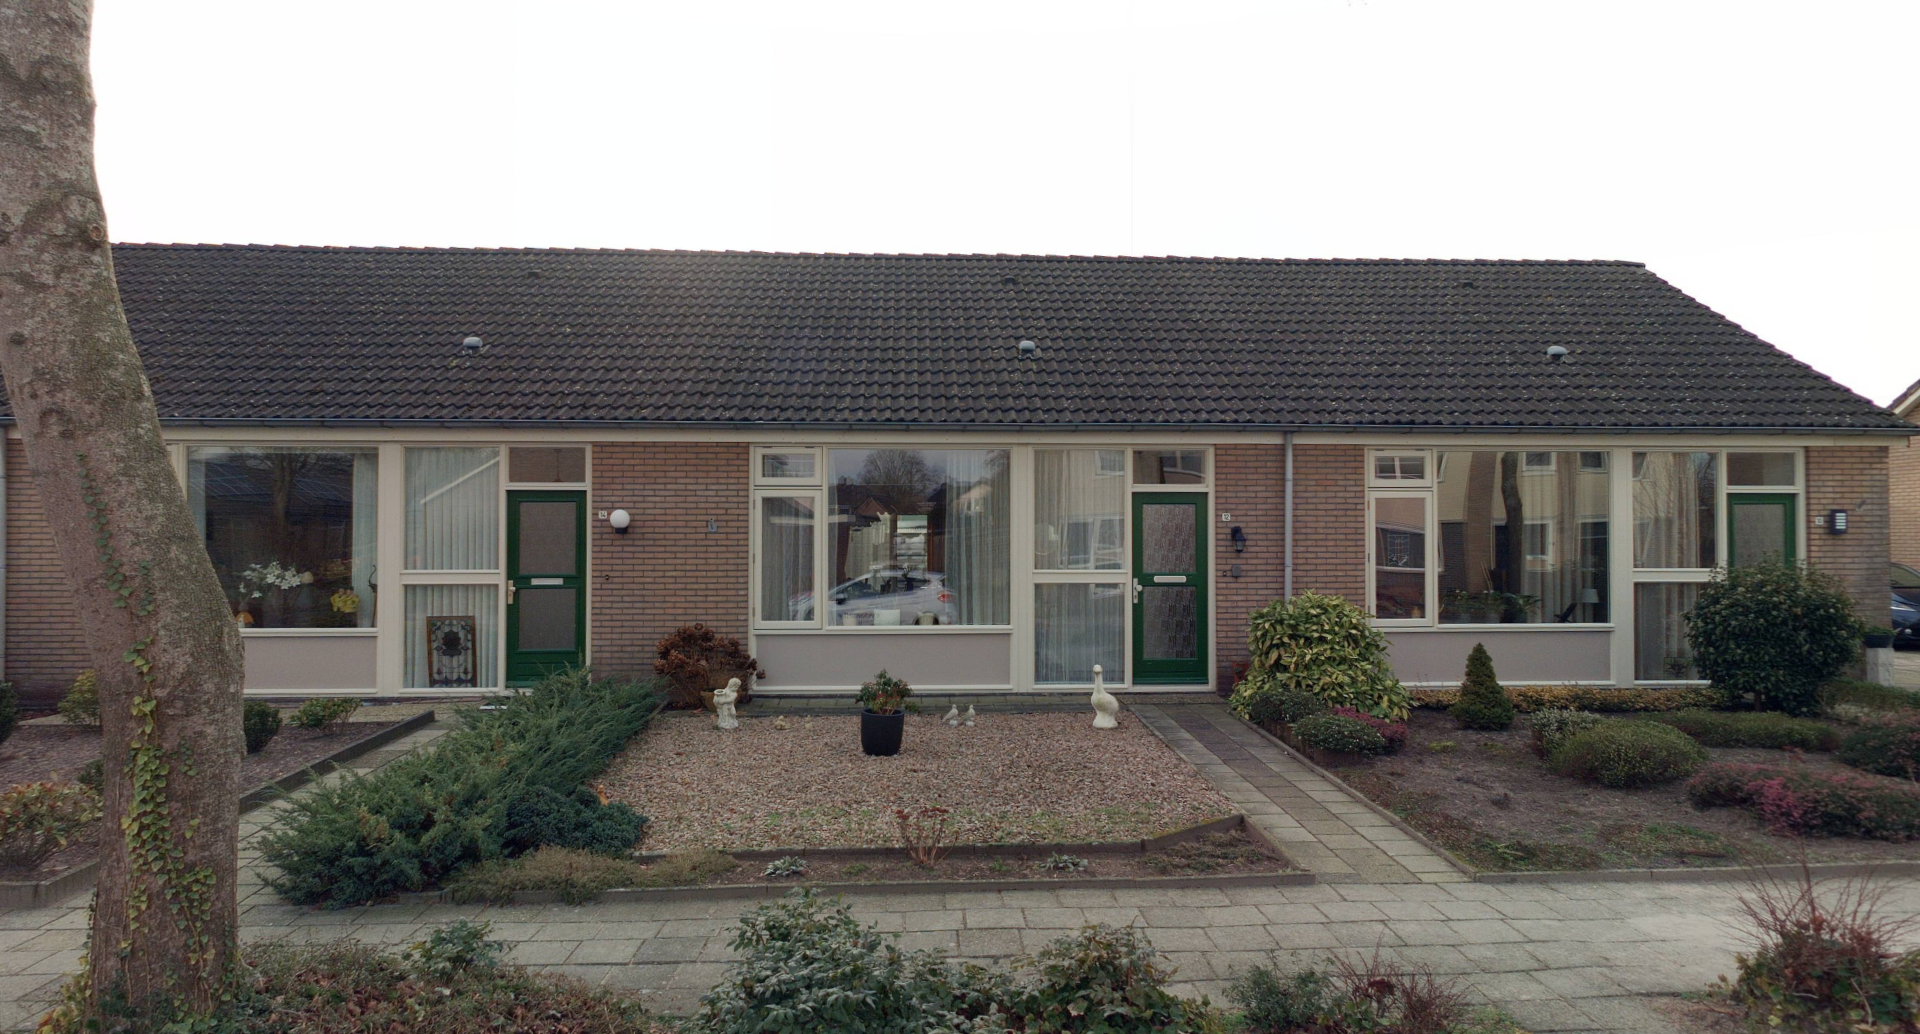 Commissaris de Vos van Steenwijkstraat 12, 7961 CK Ruinerwold, Nederland